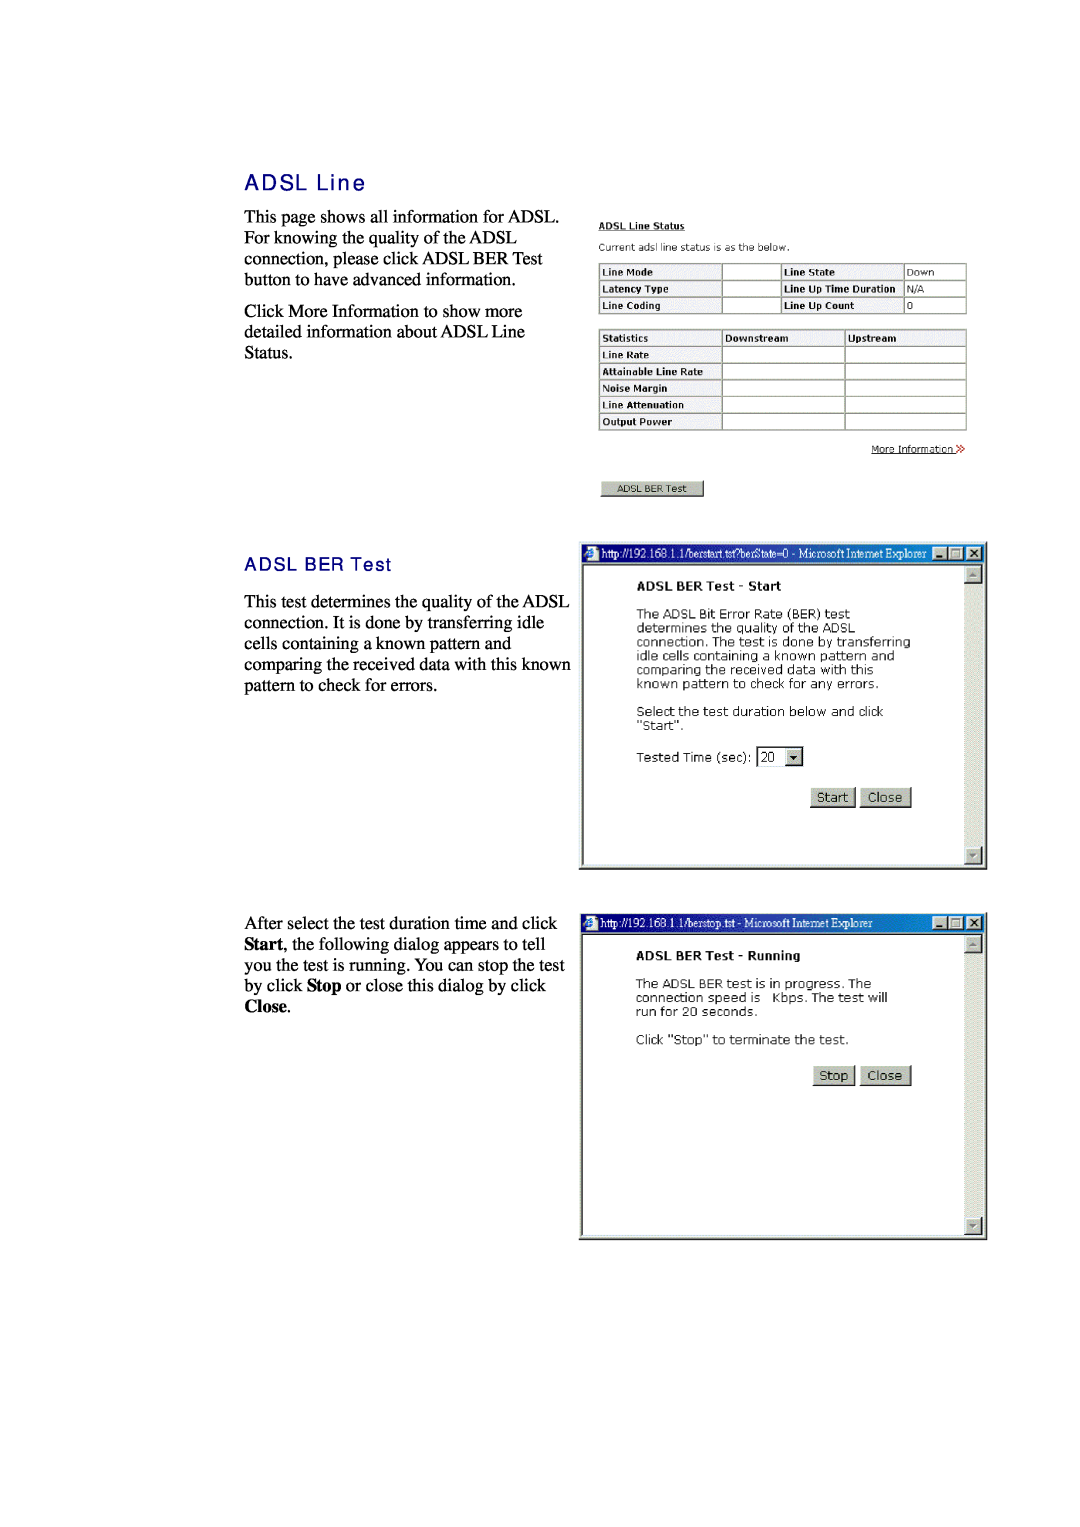 Siemens CL-010-I manual ADSL Line, ADSL BER Test 